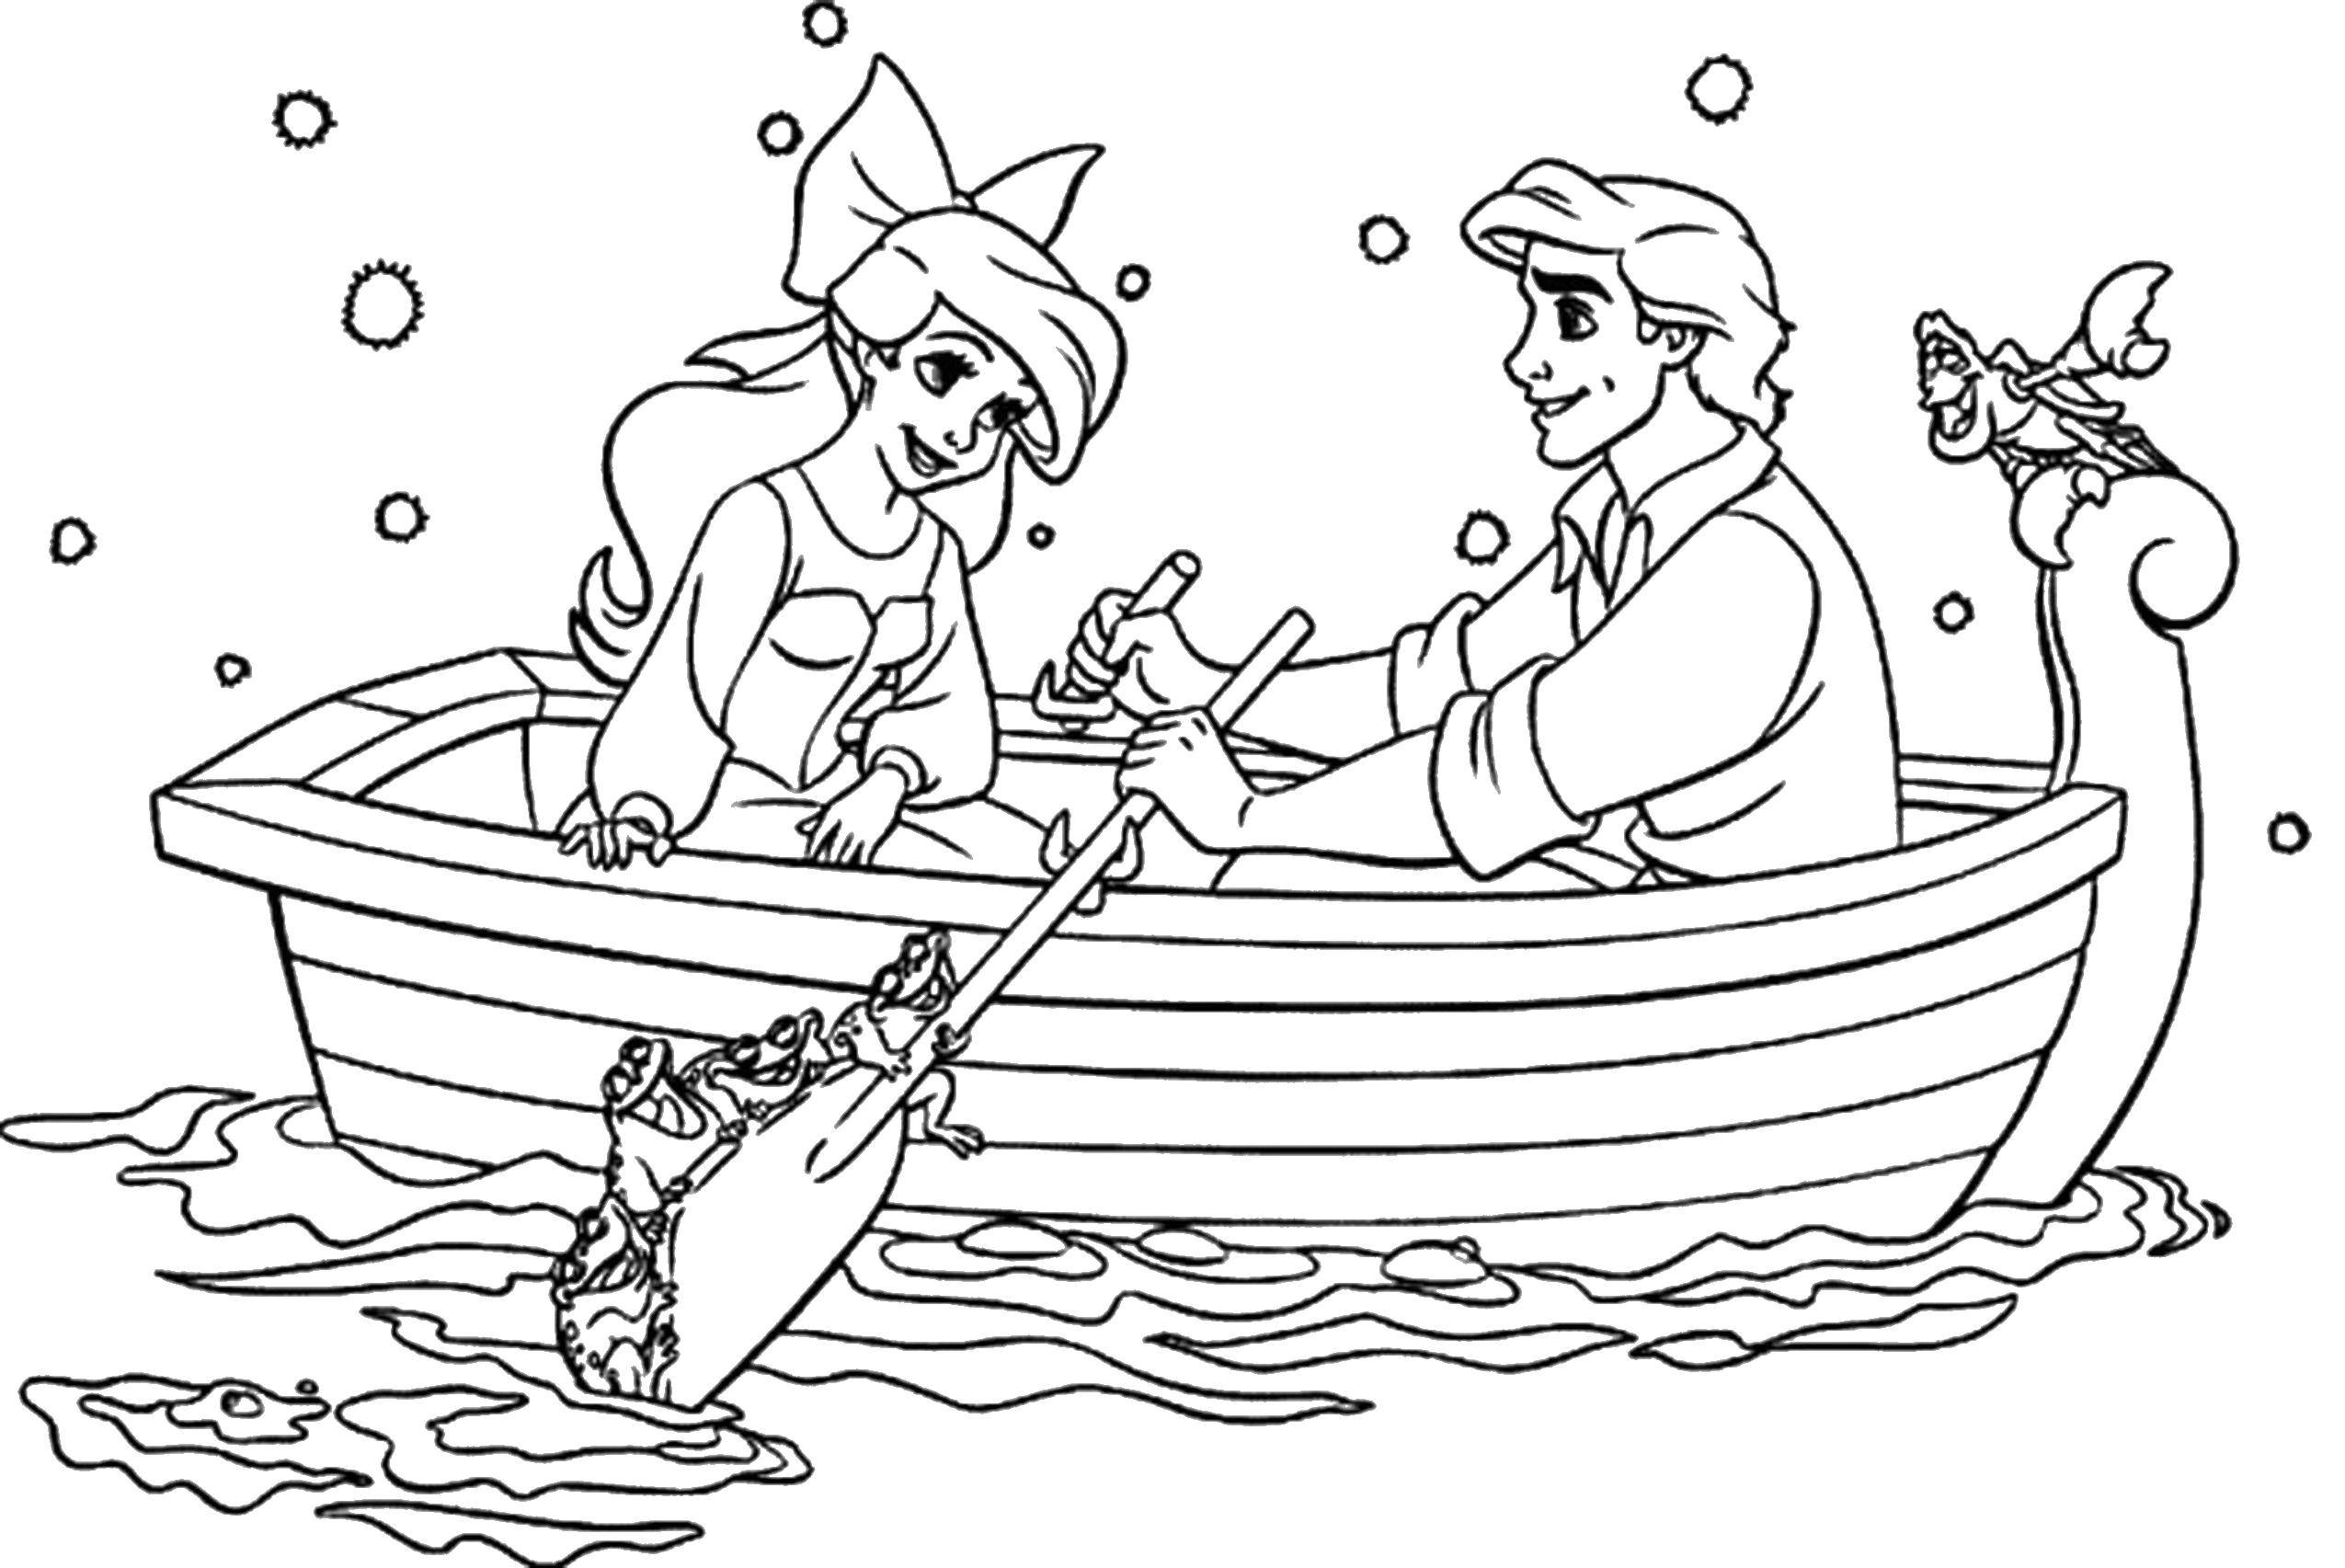 Опис: розмальовки  Аріель з коханим у човні. Категорія: розмальовки. Теги:  Дісней, русалонька, Аріель.